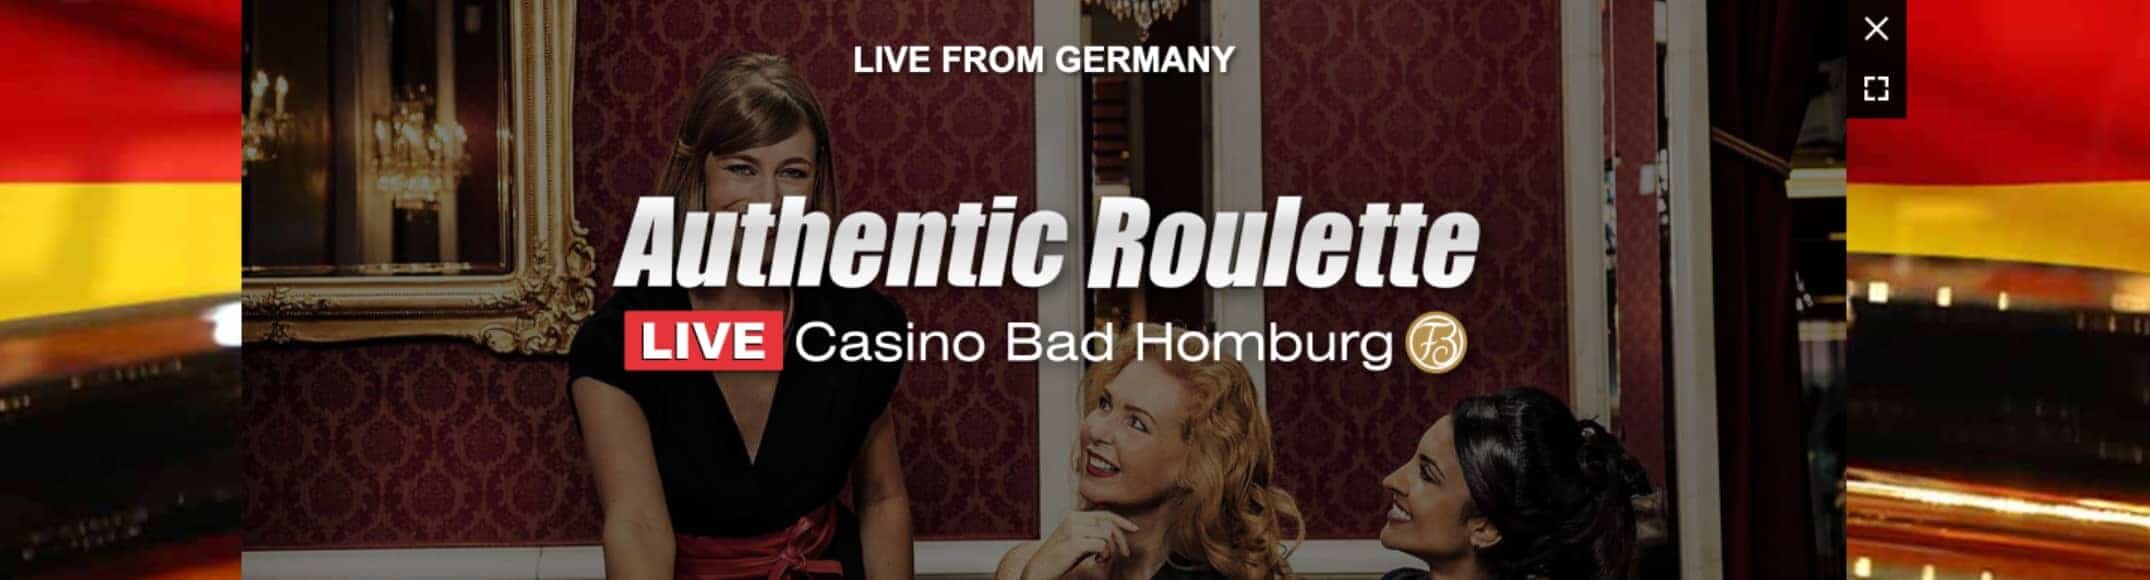 Bad Homburg Live Casino stream